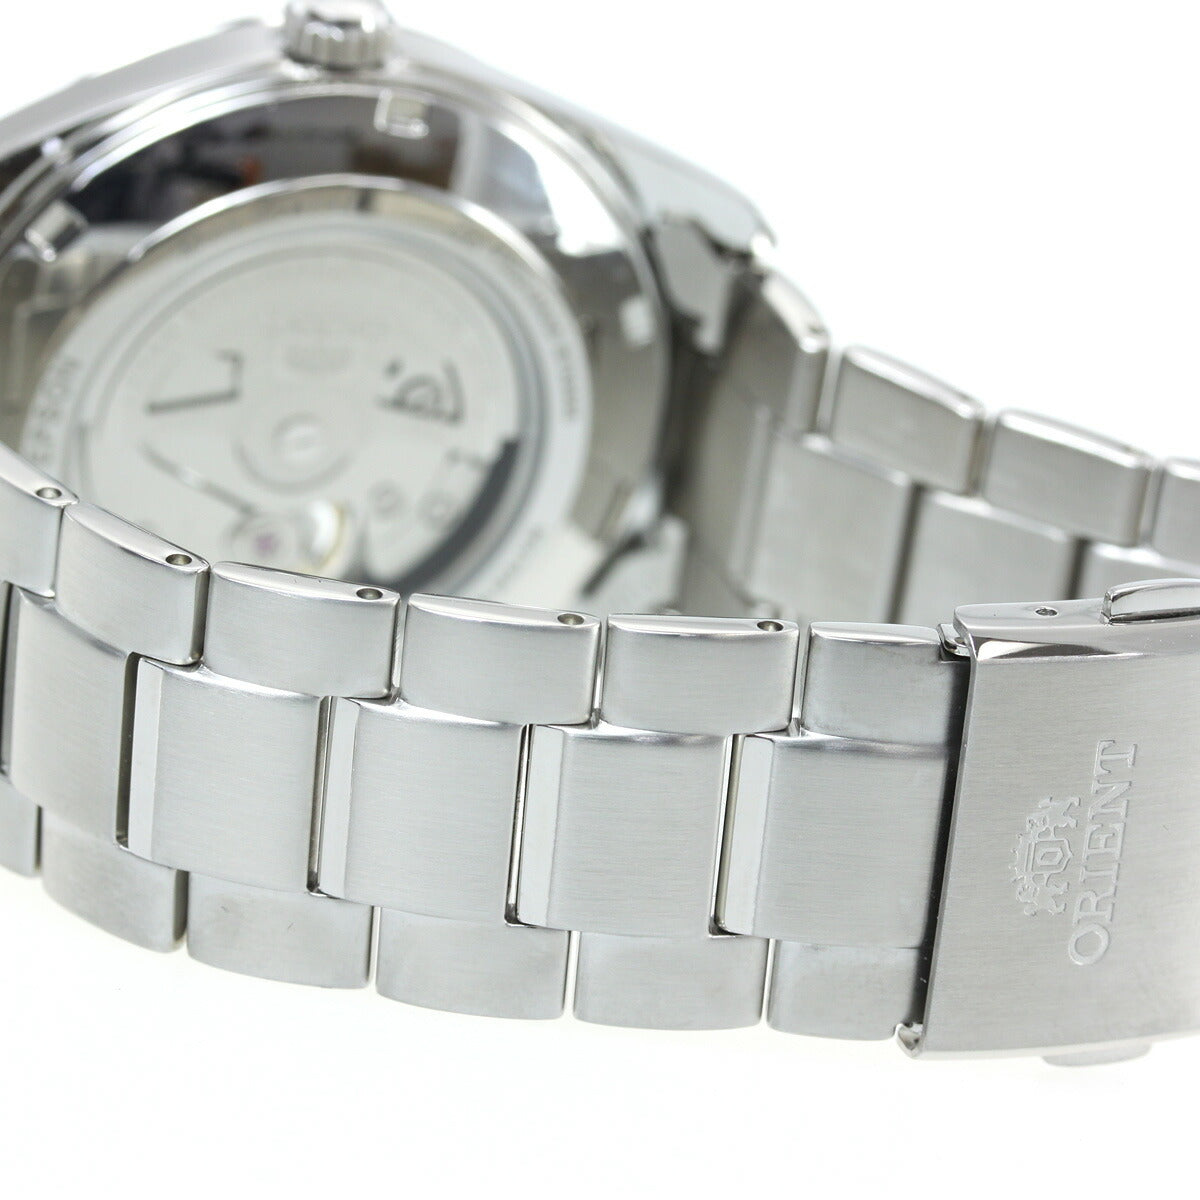 オリエント 腕時計 メンズ 自動巻き 機械式 ORIENT コンテンポラリー CONTEMPORARY セミスケルトン RN-AR0002L